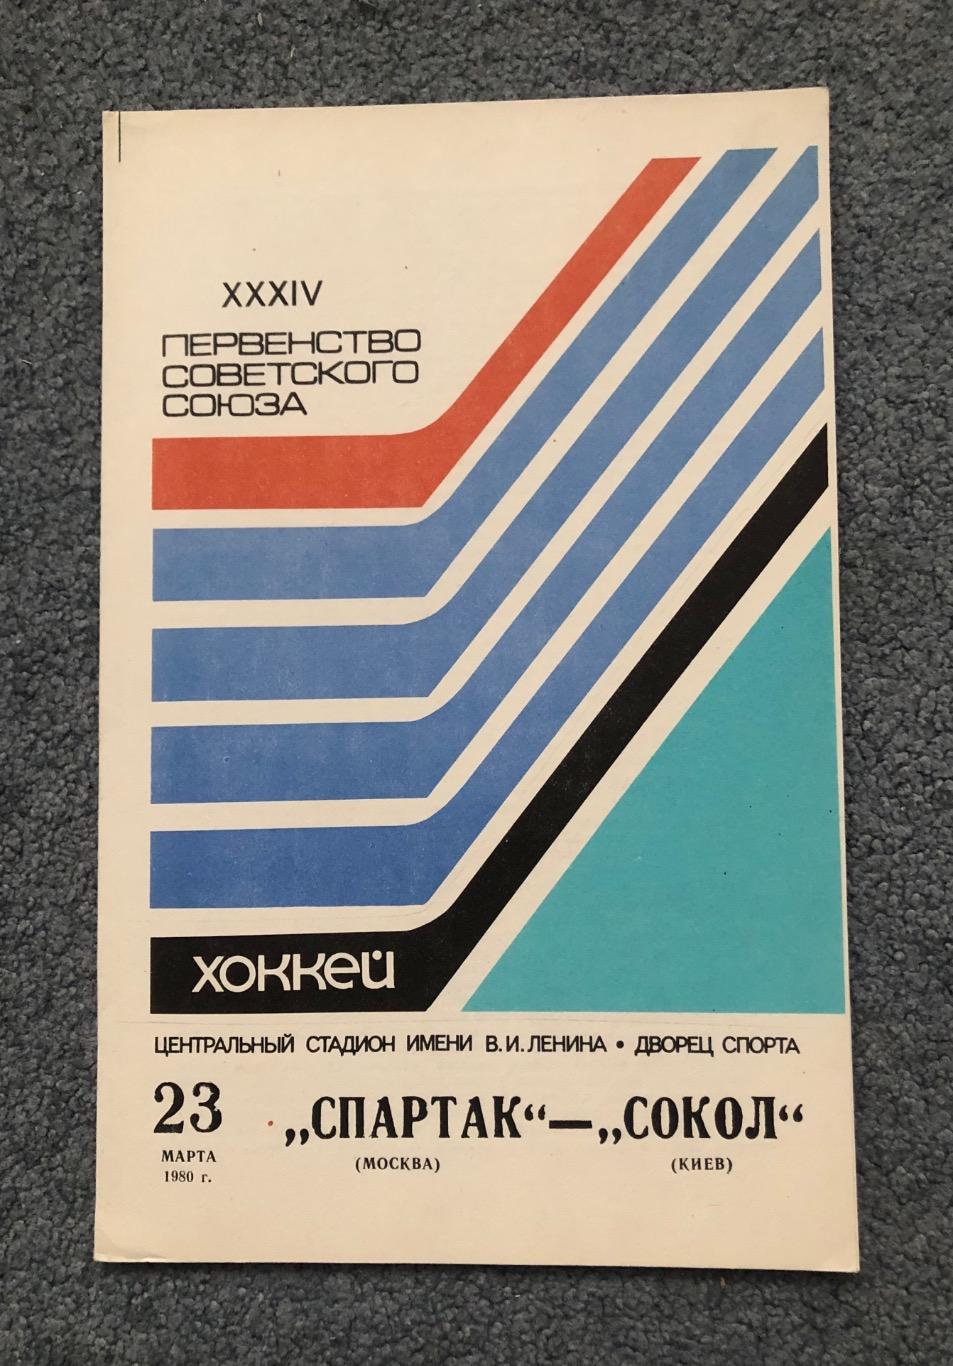 Спартак Москва - Сокол Киев, 23.03.1980